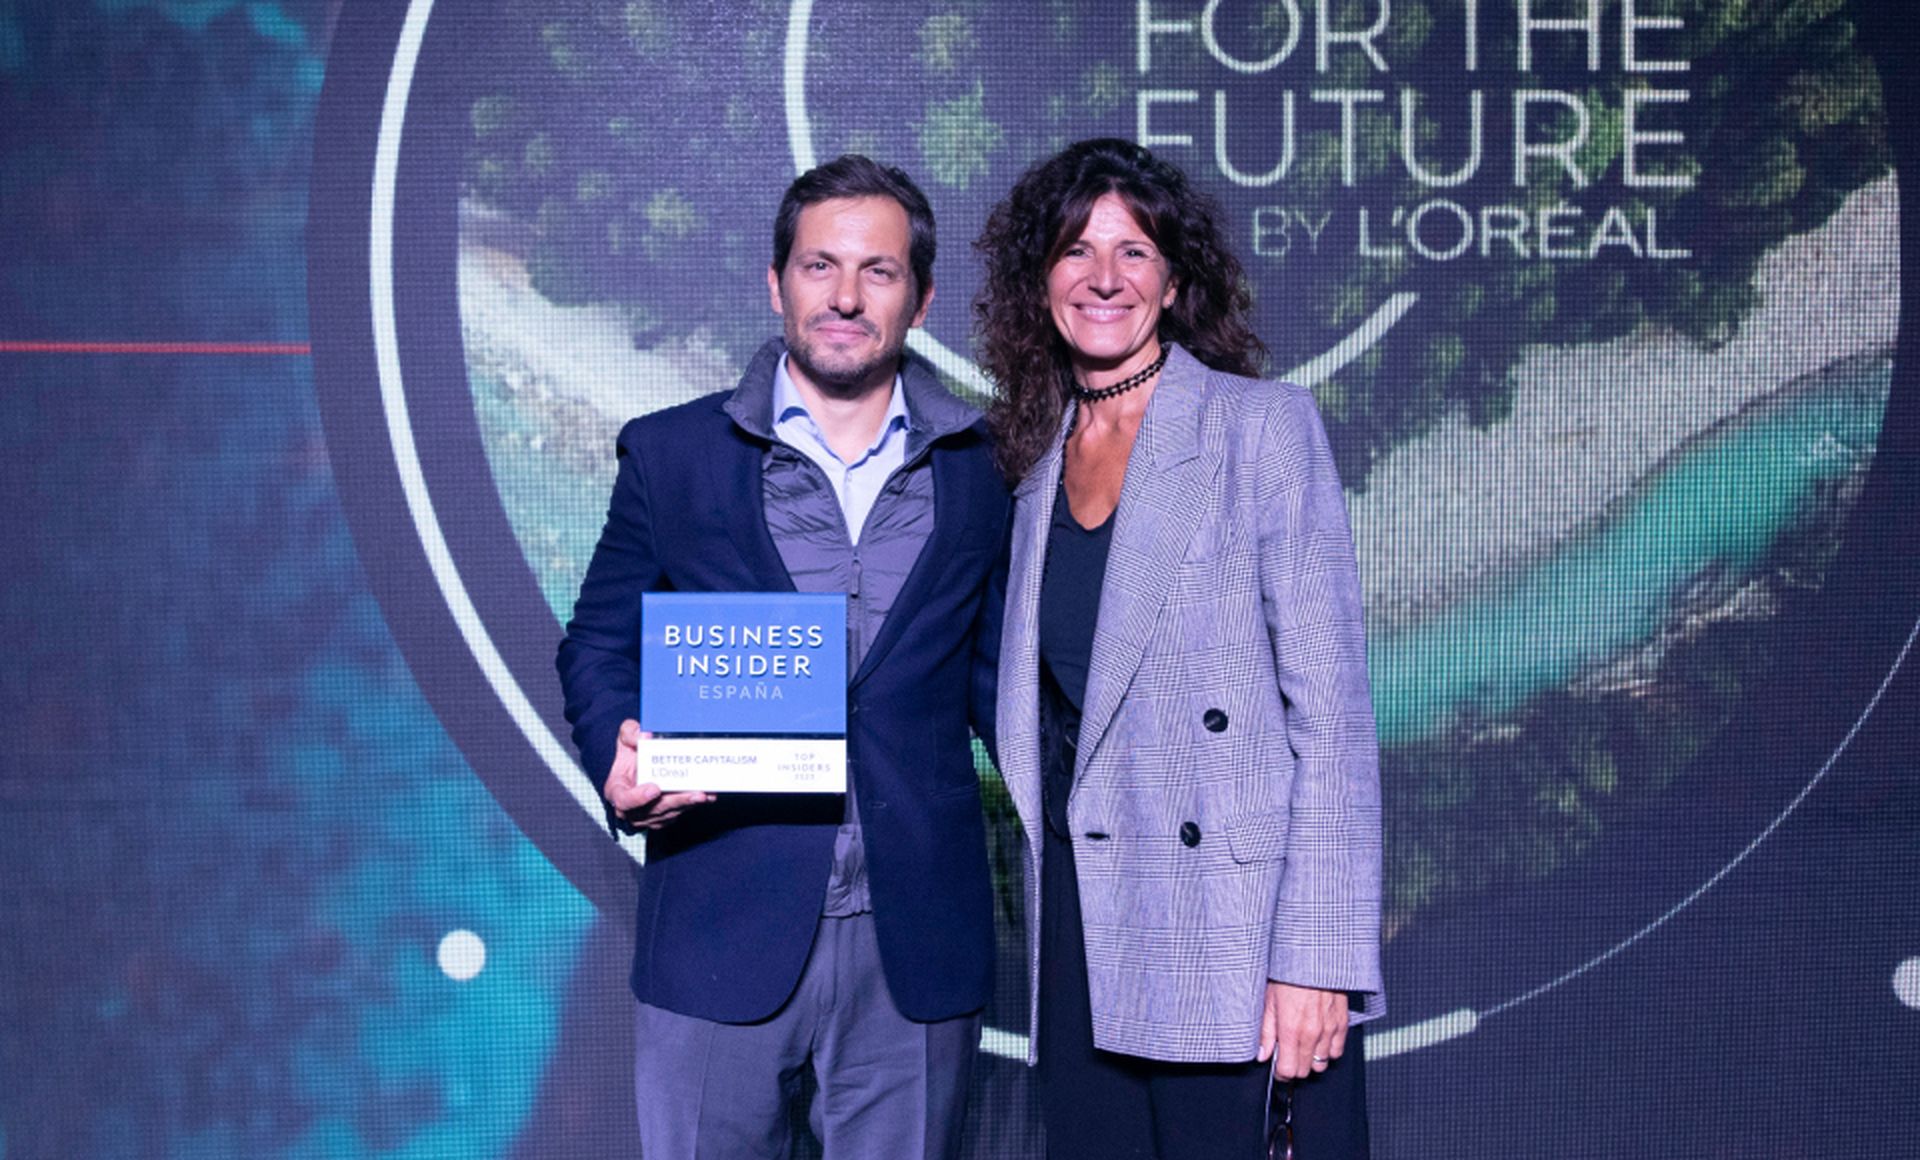 Gonzalo Nascimento, director general de L’Oréal Professional y CEO de L’Oréal Portugal, recibe el premio Top Insider del Año en la categoría de Better Capitalism de Ester García Cosín, CEO de Havas Media Network. 